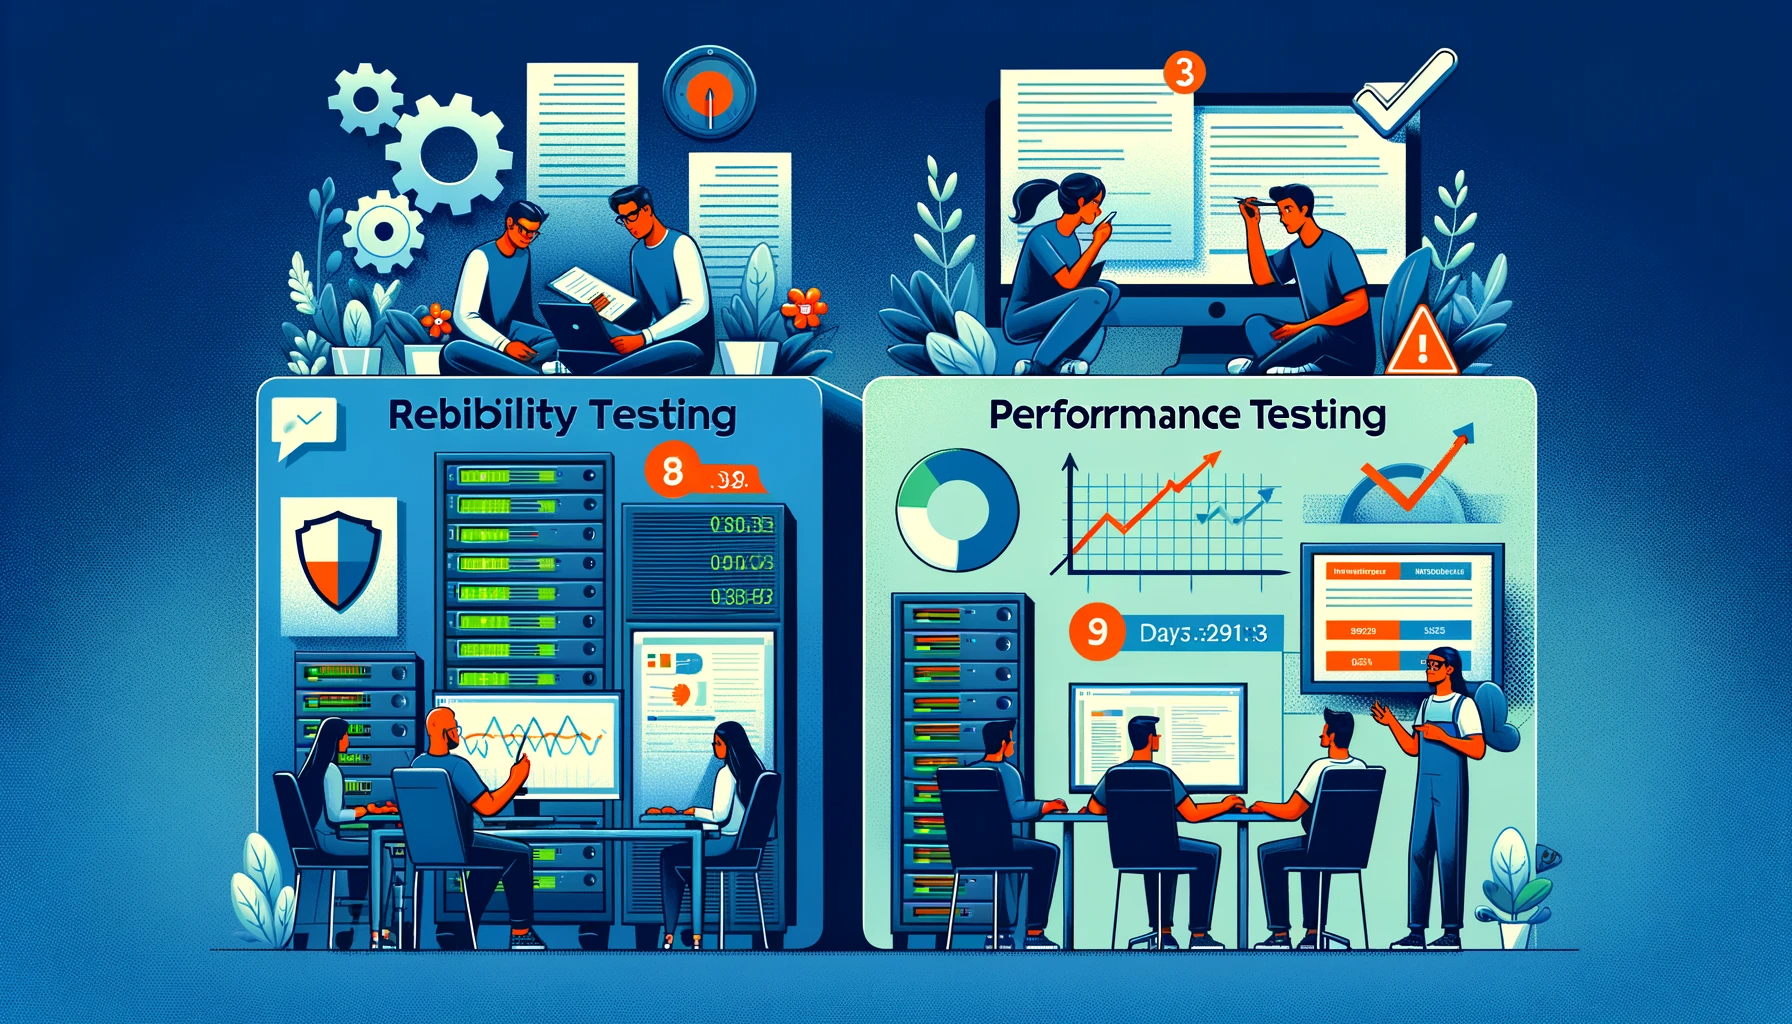 예약 시스템 개발을 위한 품질 보증 및 테스트 전략 - 테스트 계획: 신뢰성 테스트&#44; 성능 테스트&#44; 사용자 경험 테스트